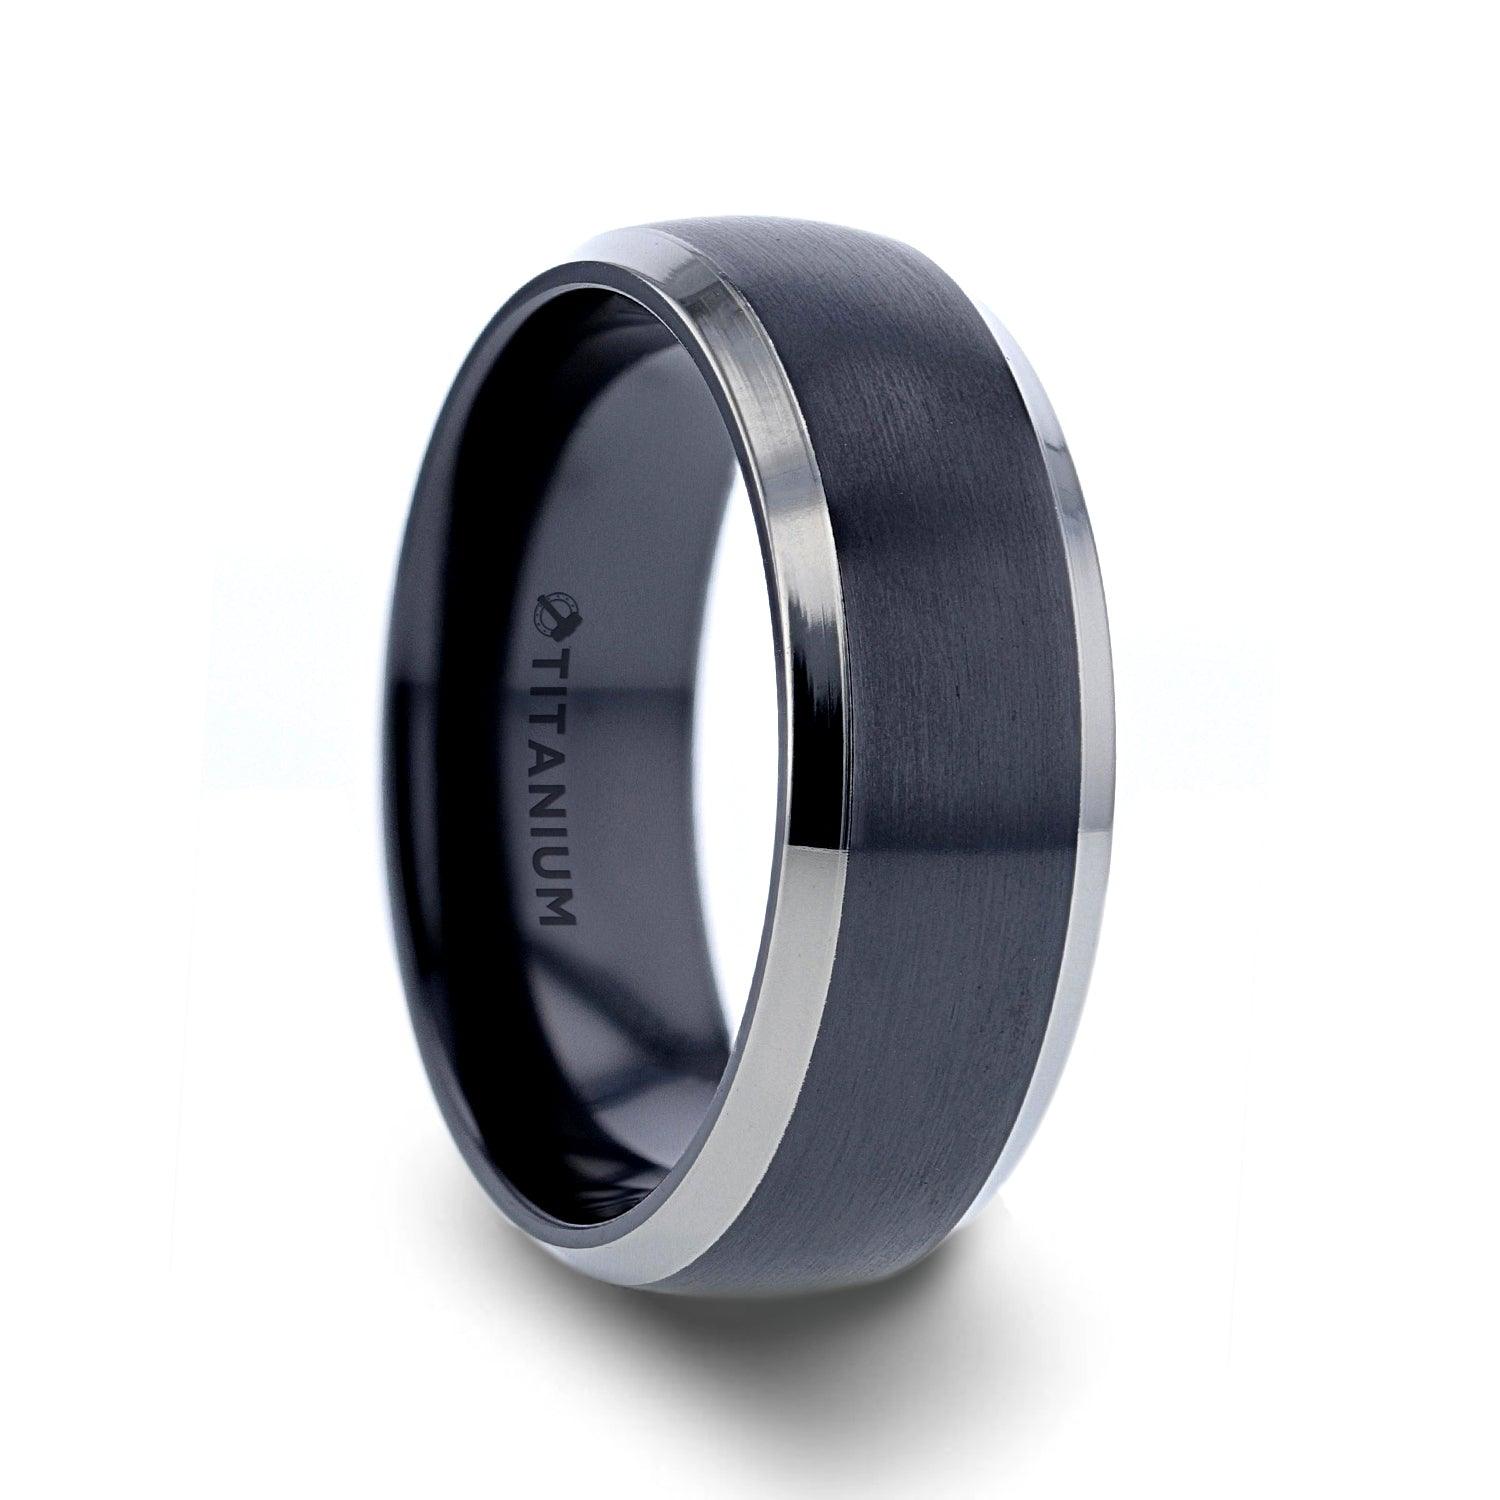 NOLAN - Domed Black Titanium Wedding Band with Polished Beveled Edges - 8mm - The Rutile Ltd